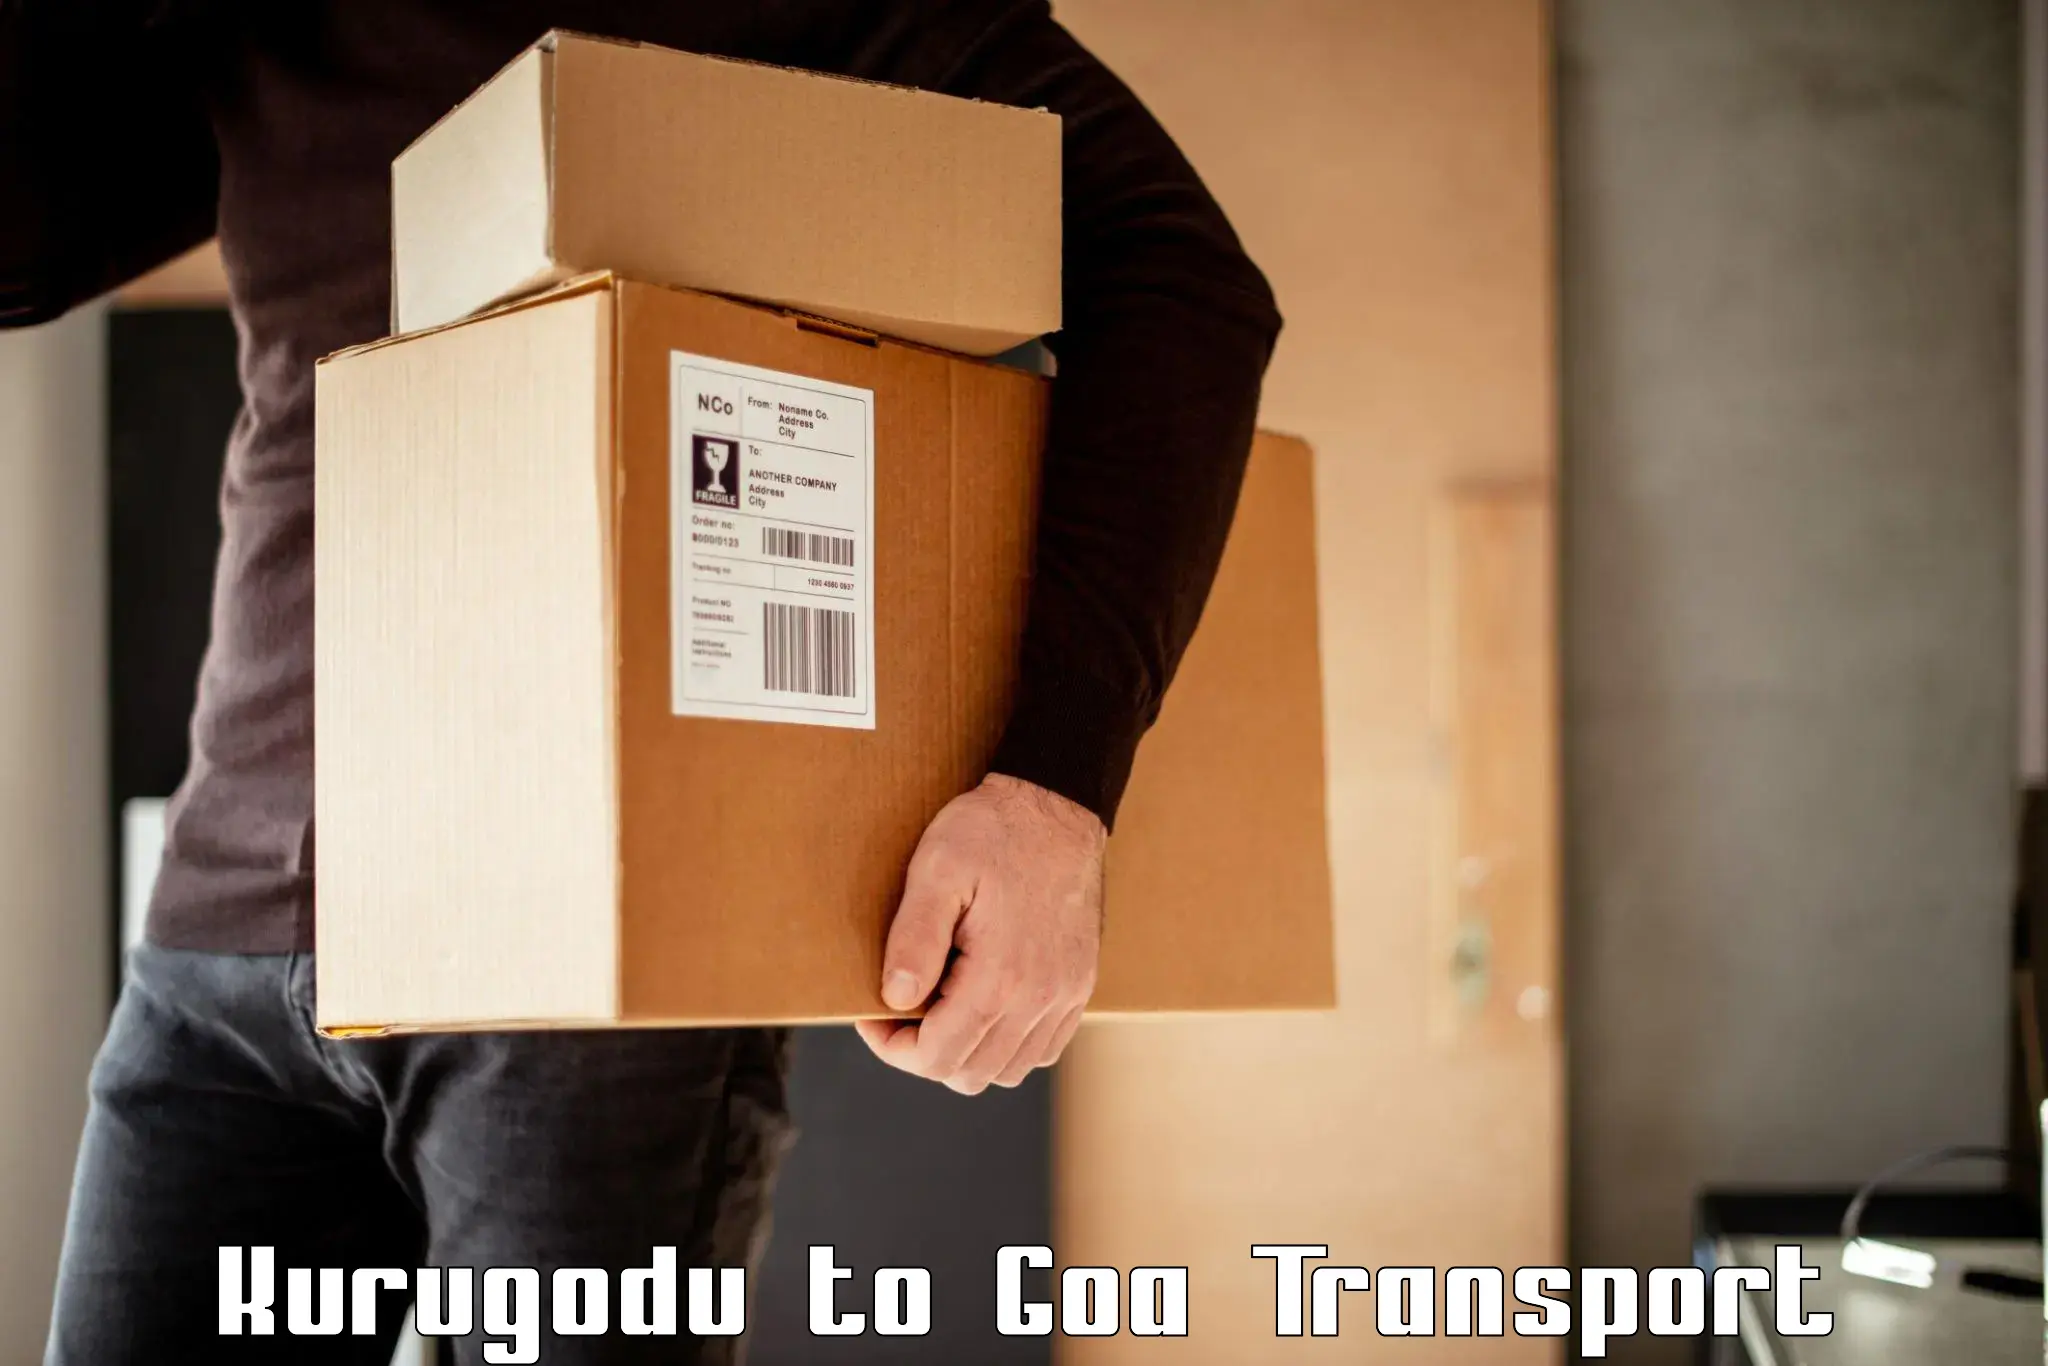 Vehicle parcel service Kurugodu to NIT Goa